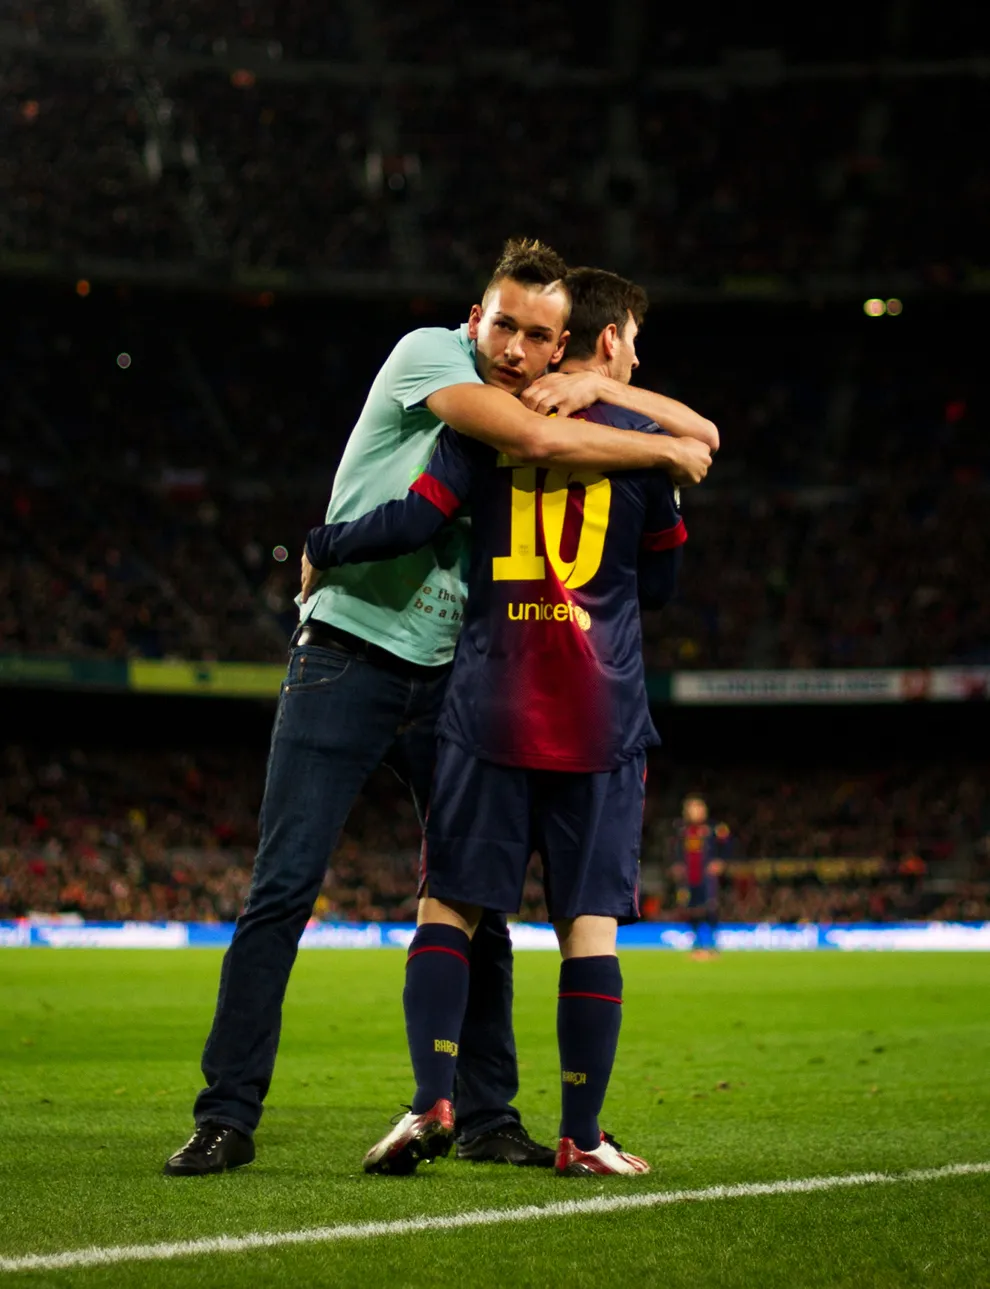 Οπαδός μπήκε στο γήπεδο μόνο για να αγκαλιάσει το Messi!